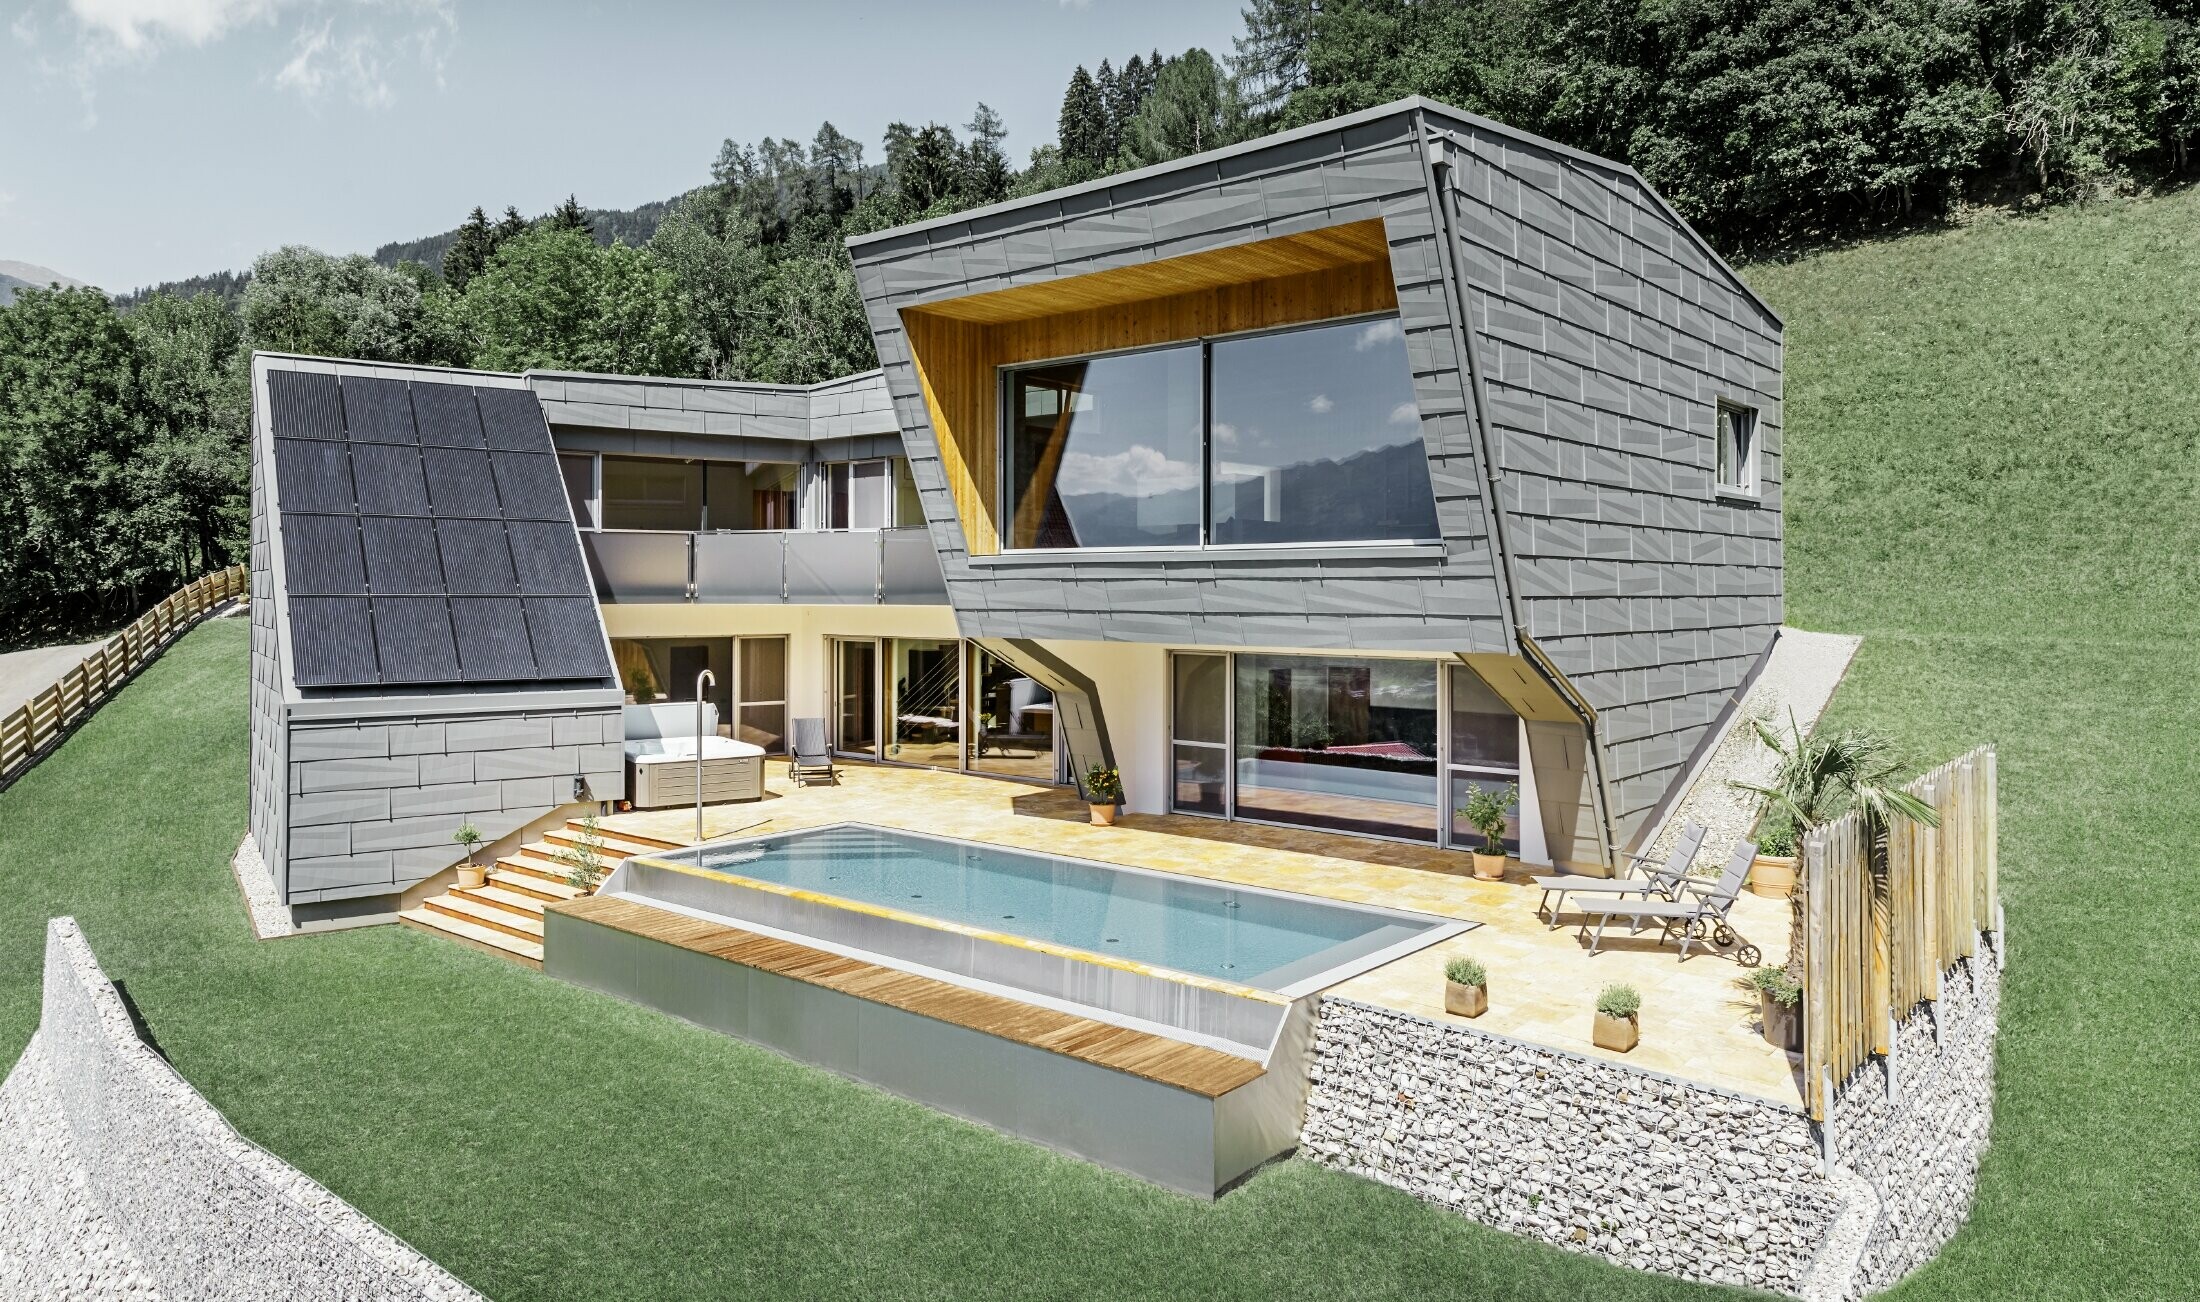 Moderní rodinný dům s bazénem byl postaven na svažitém terénu. Celý dům je opláštěn střešním a fasádním panelem FX.12 od PREFA v barvě P.10. světle šedé